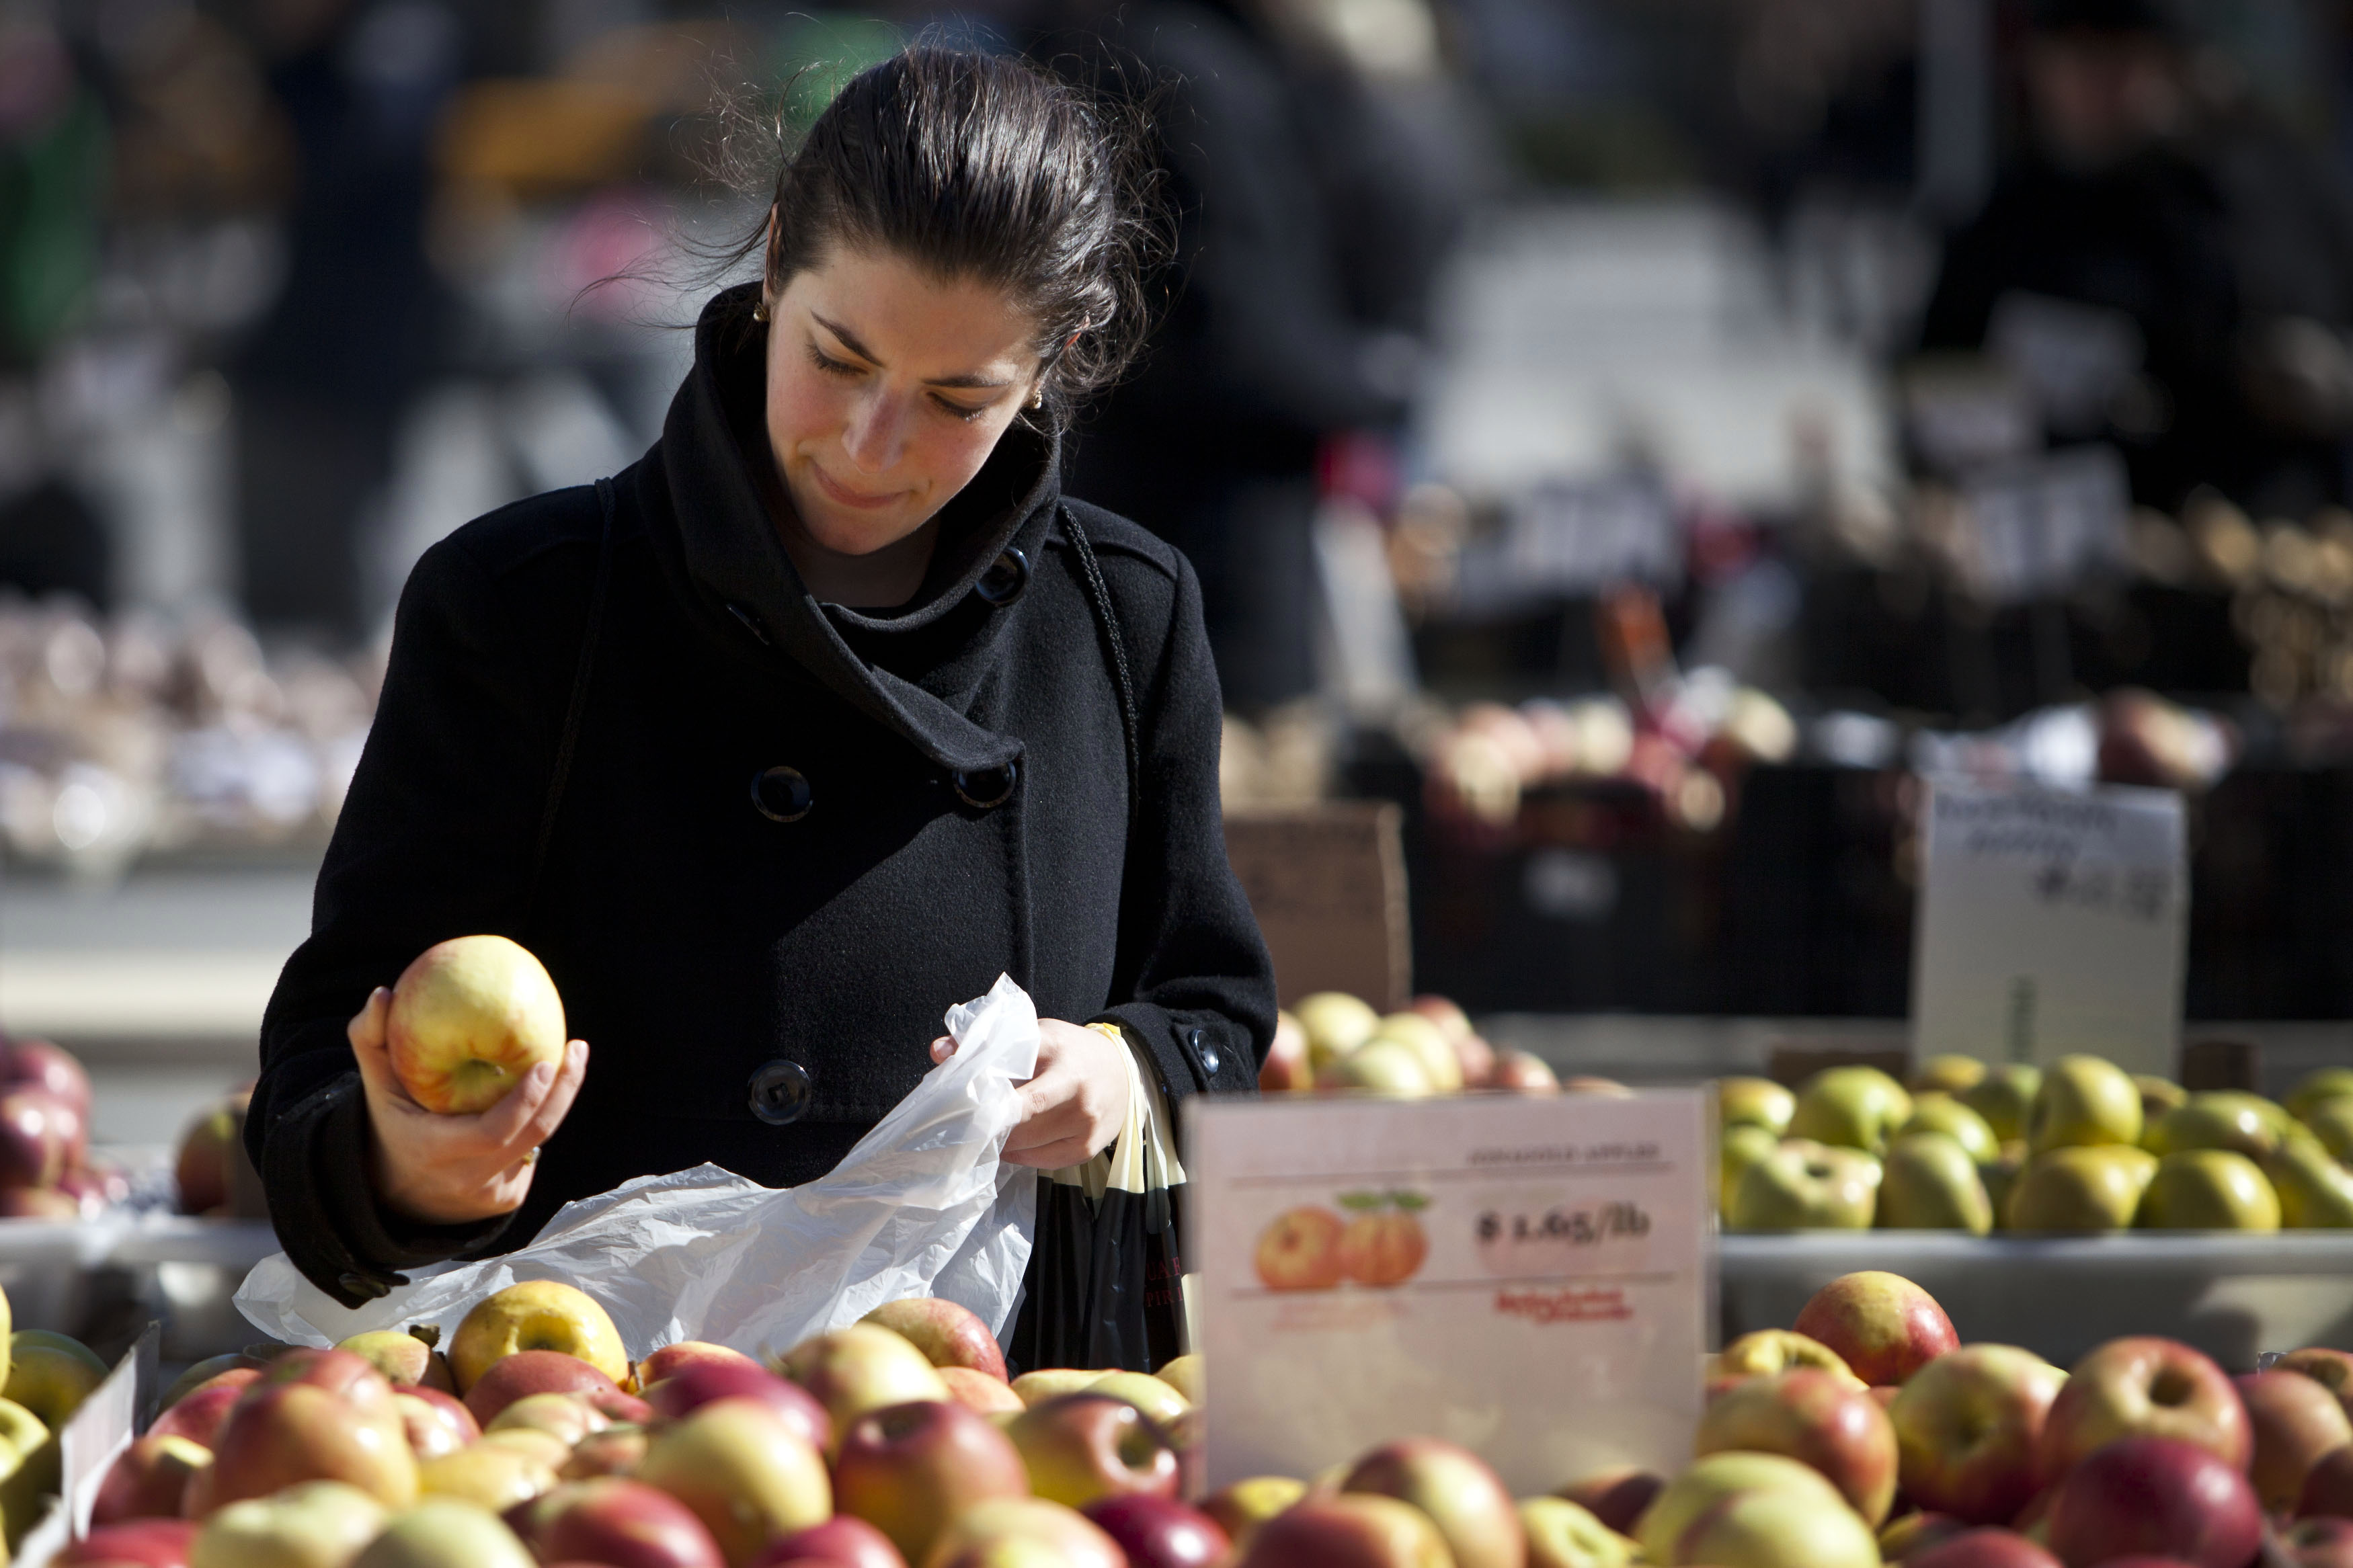 pagar Subdividir Rocío Cómo escoger las mejores manzanas, según la OCU | Business Insider España